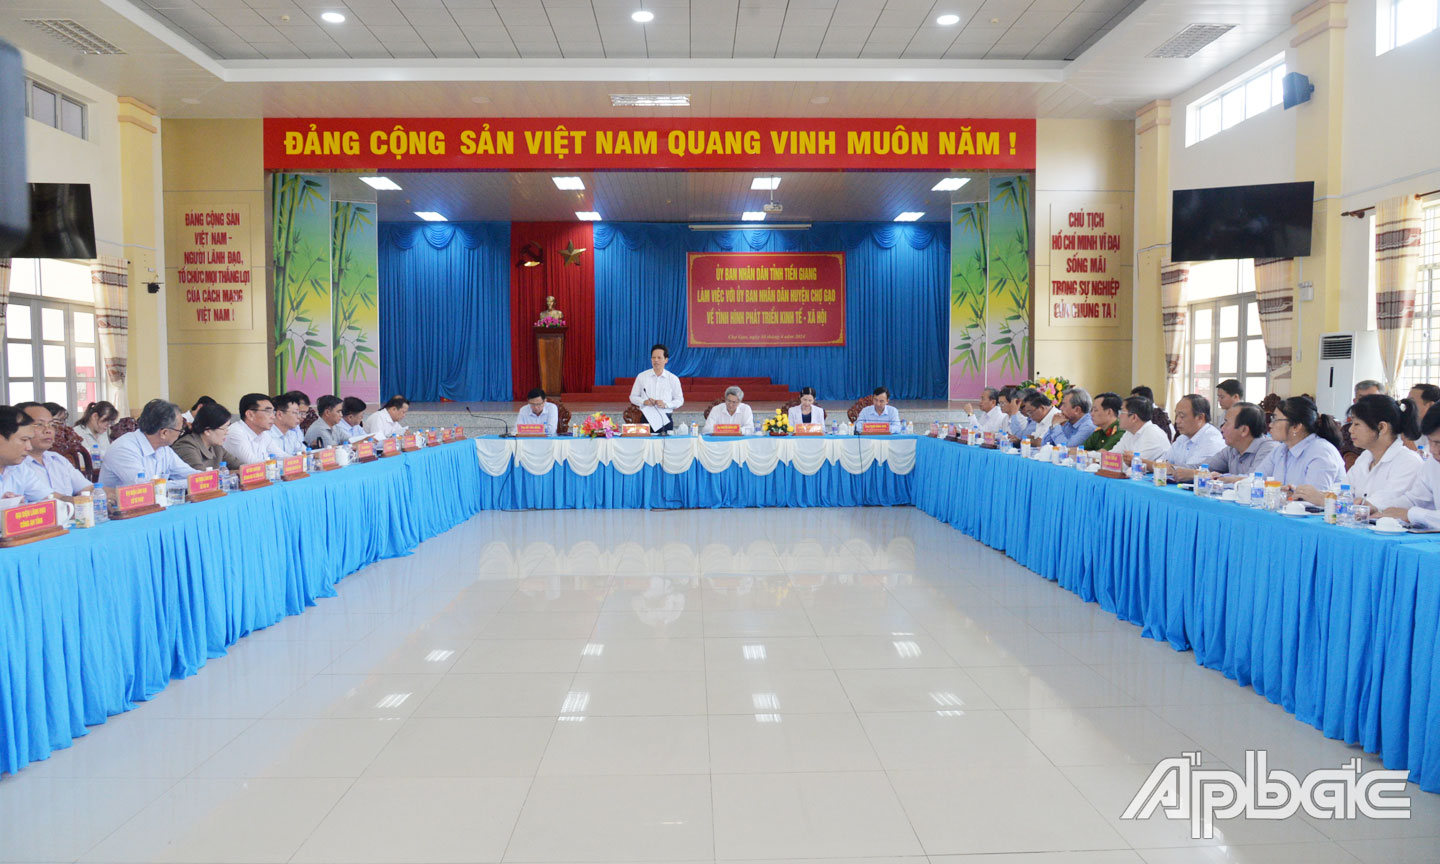 Đồng chí Nguyễn Thành Diệu phát biểu tại buổi làm việc với UBND huyện Chợ Gạo.